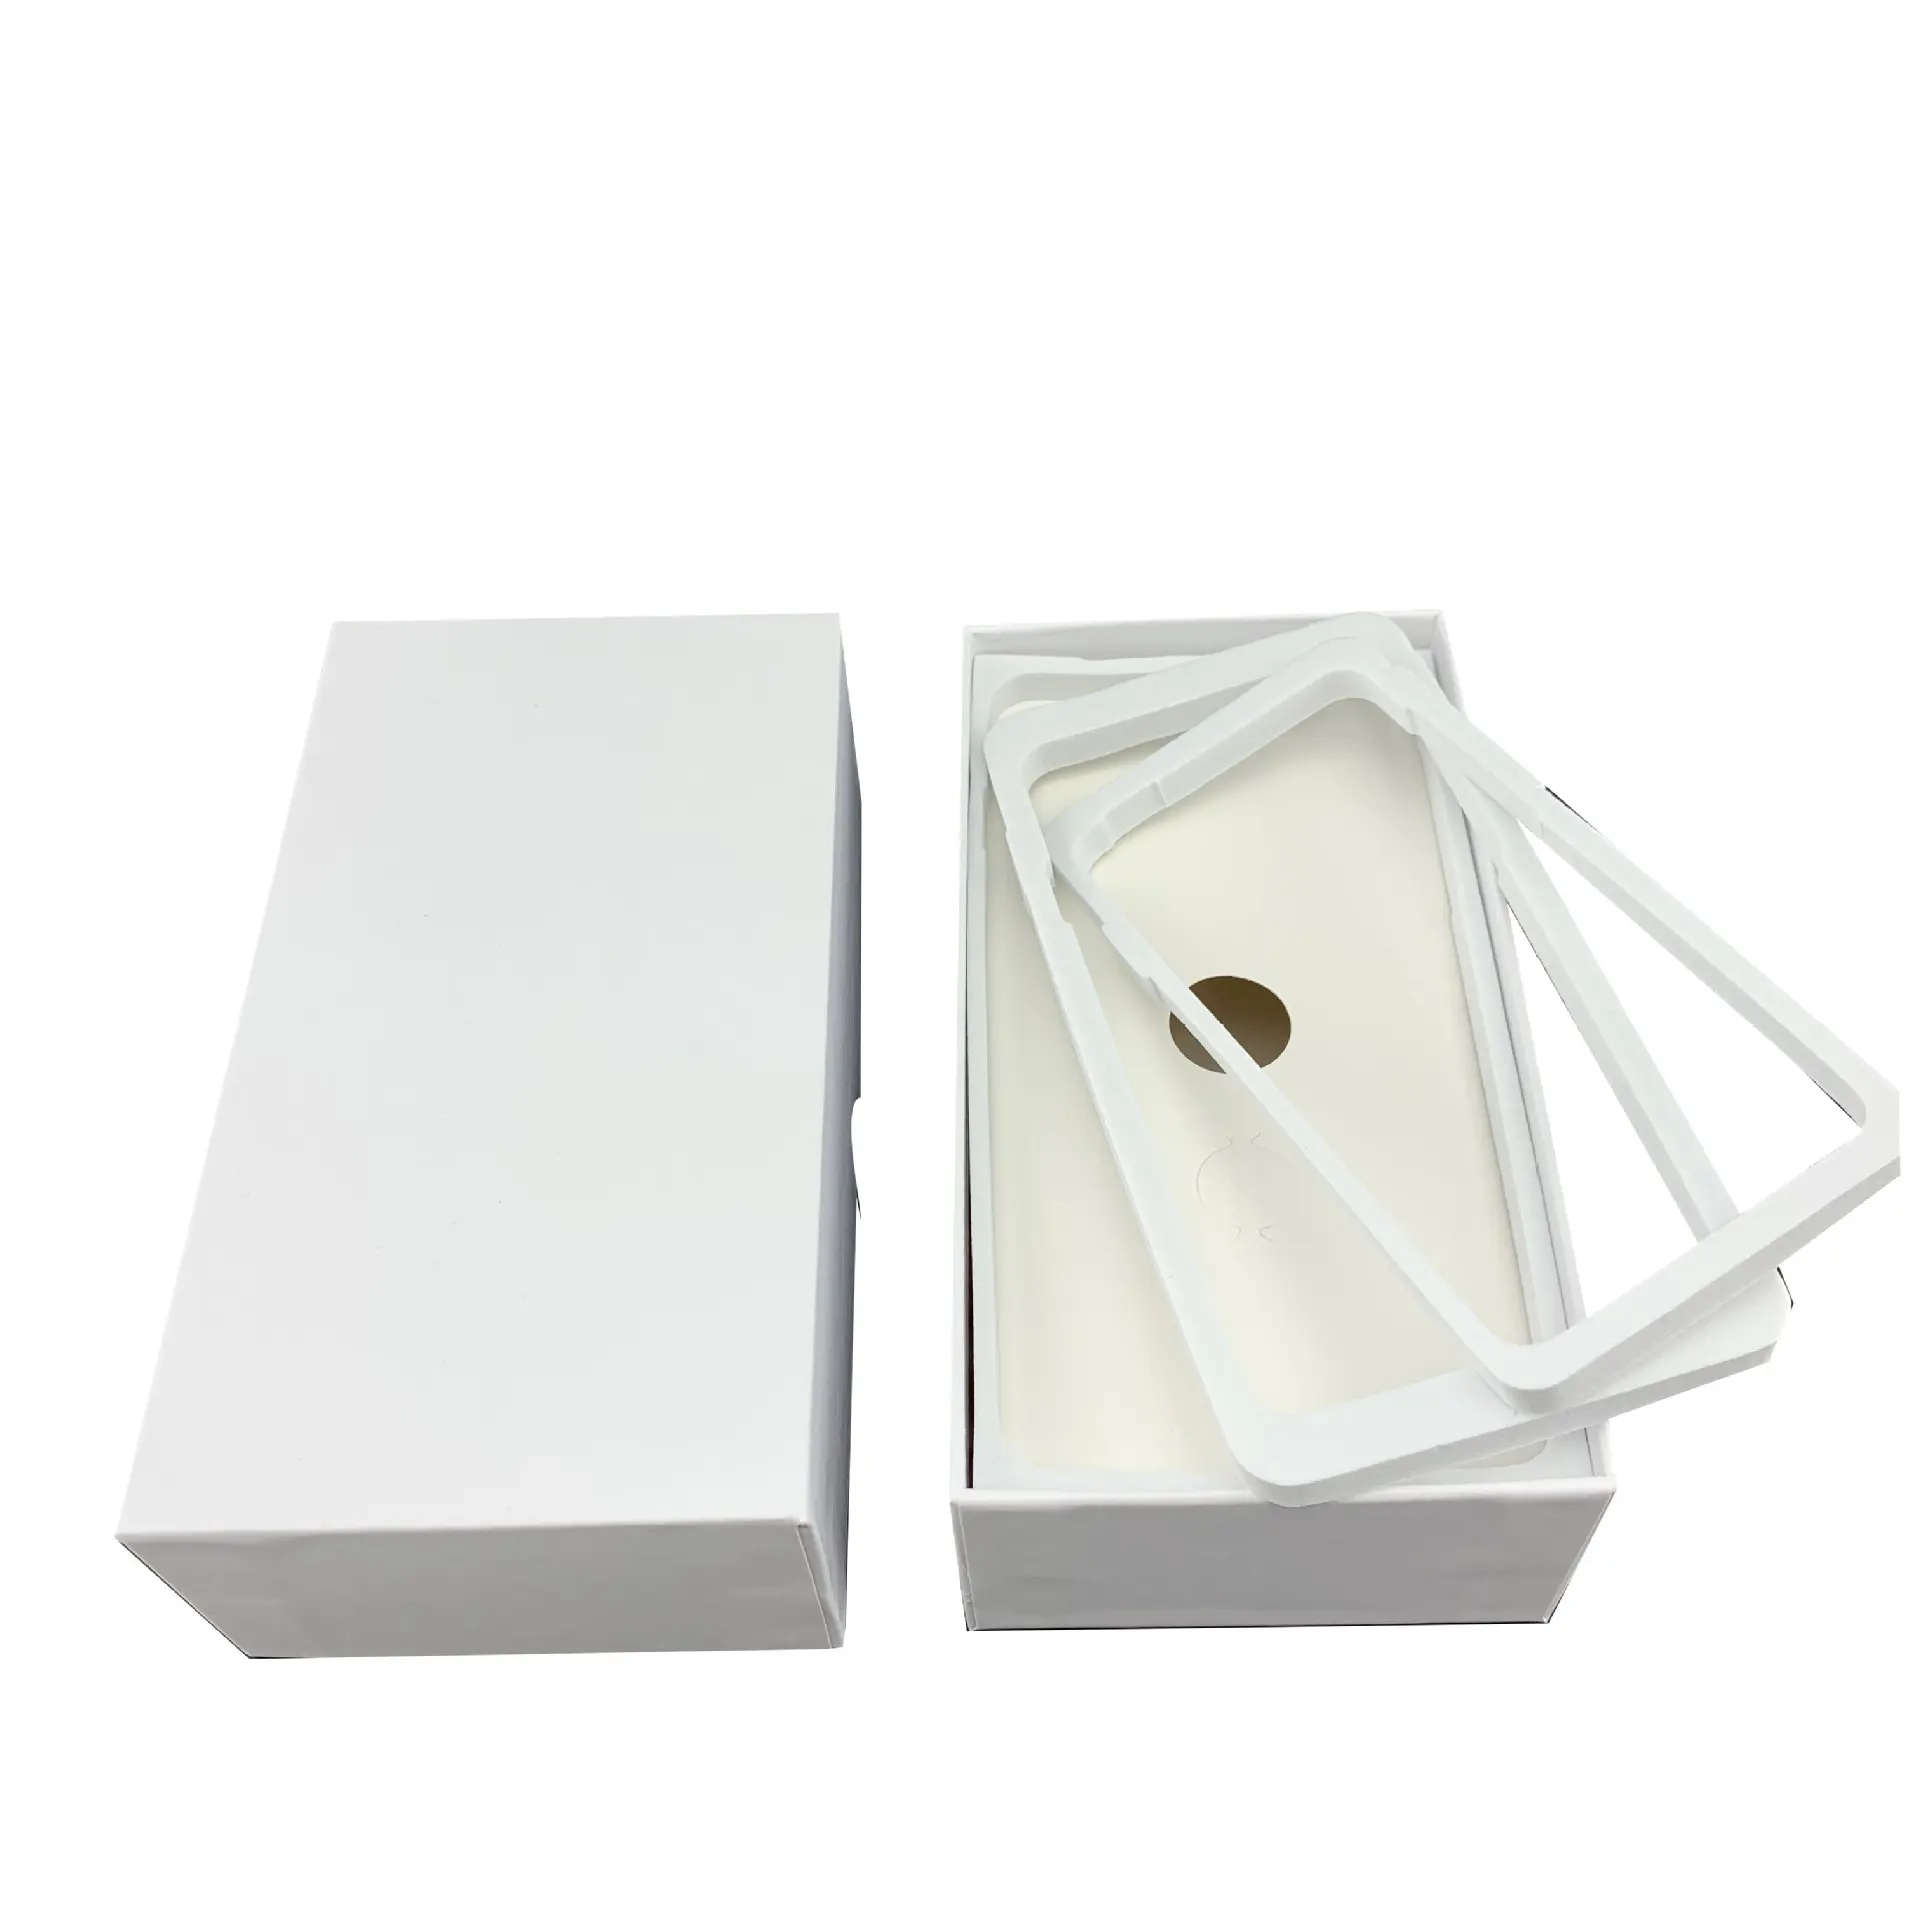 Para caixa de celular spot world tampa do empacotamento branco neutro samsung box apple fabricante especial